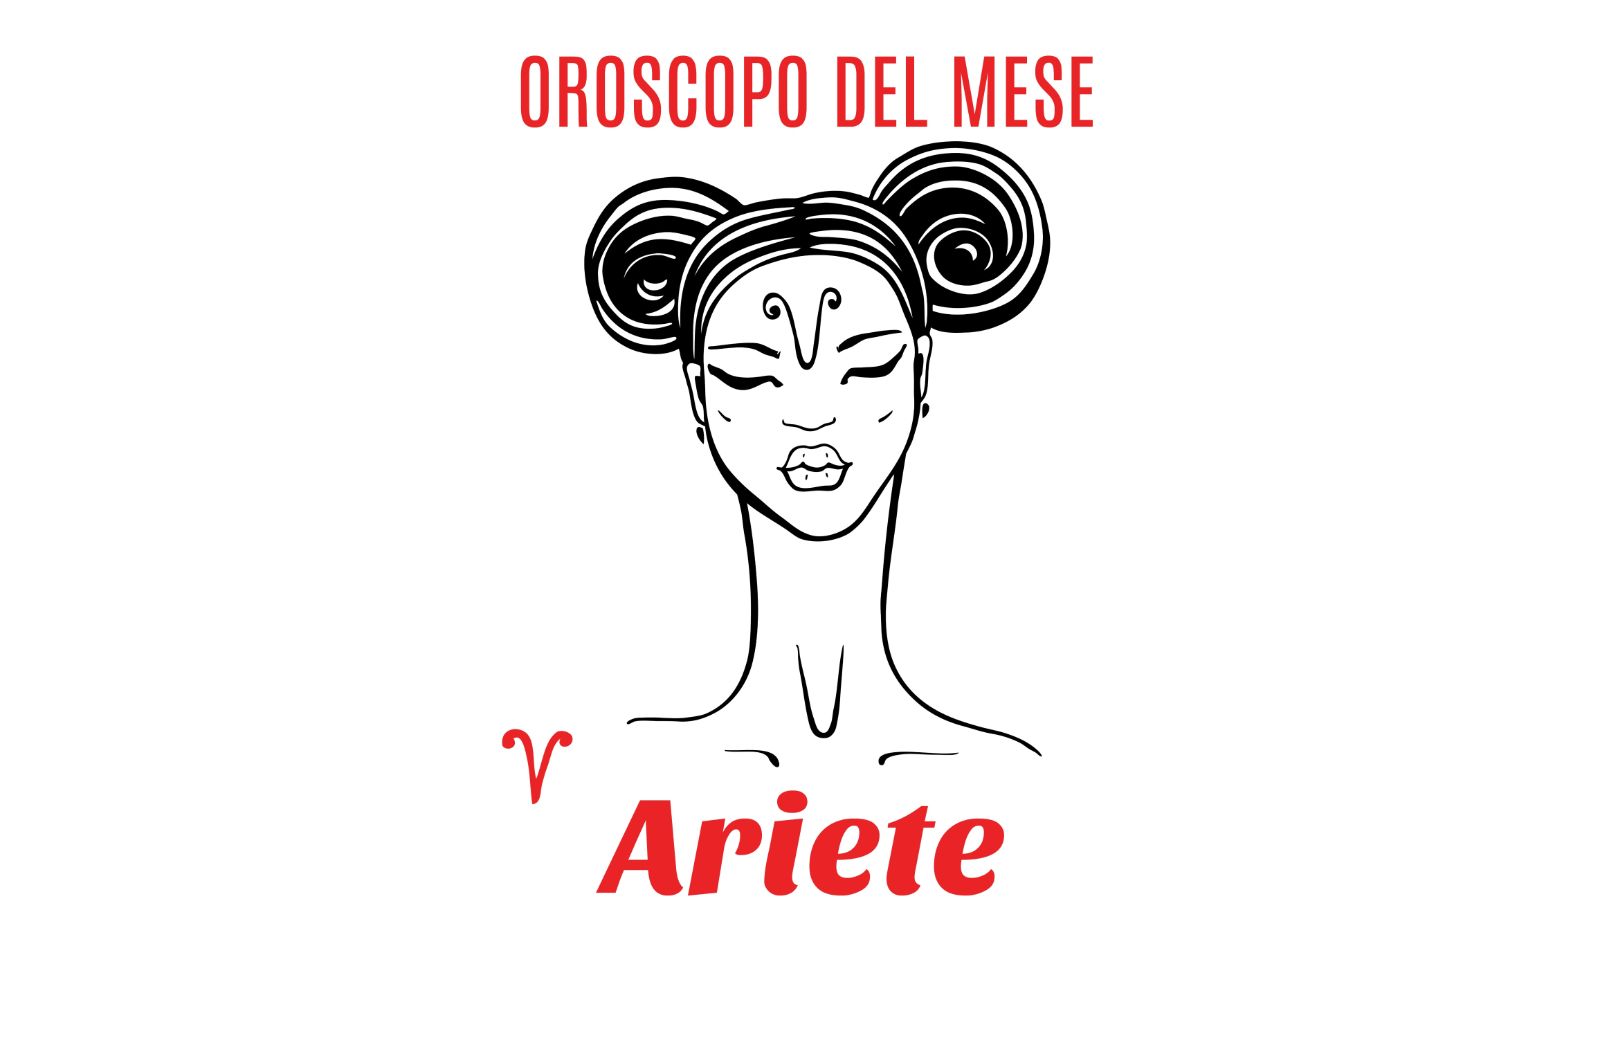 Oroscopo del mese: Ariete - marzo 2019